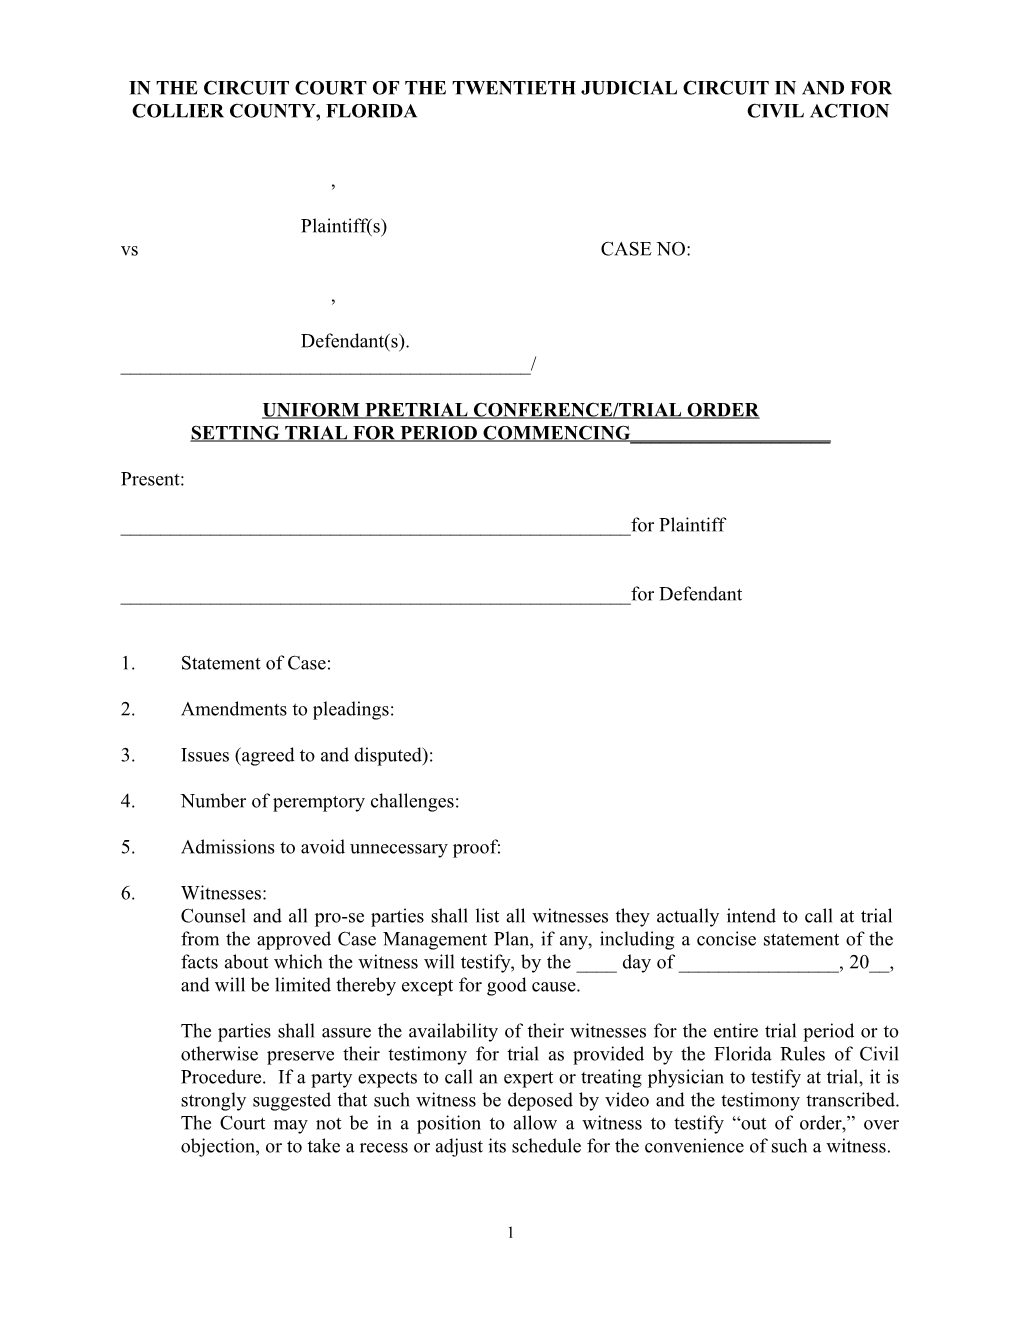 Uniform Pretrial Conference/Trial Order